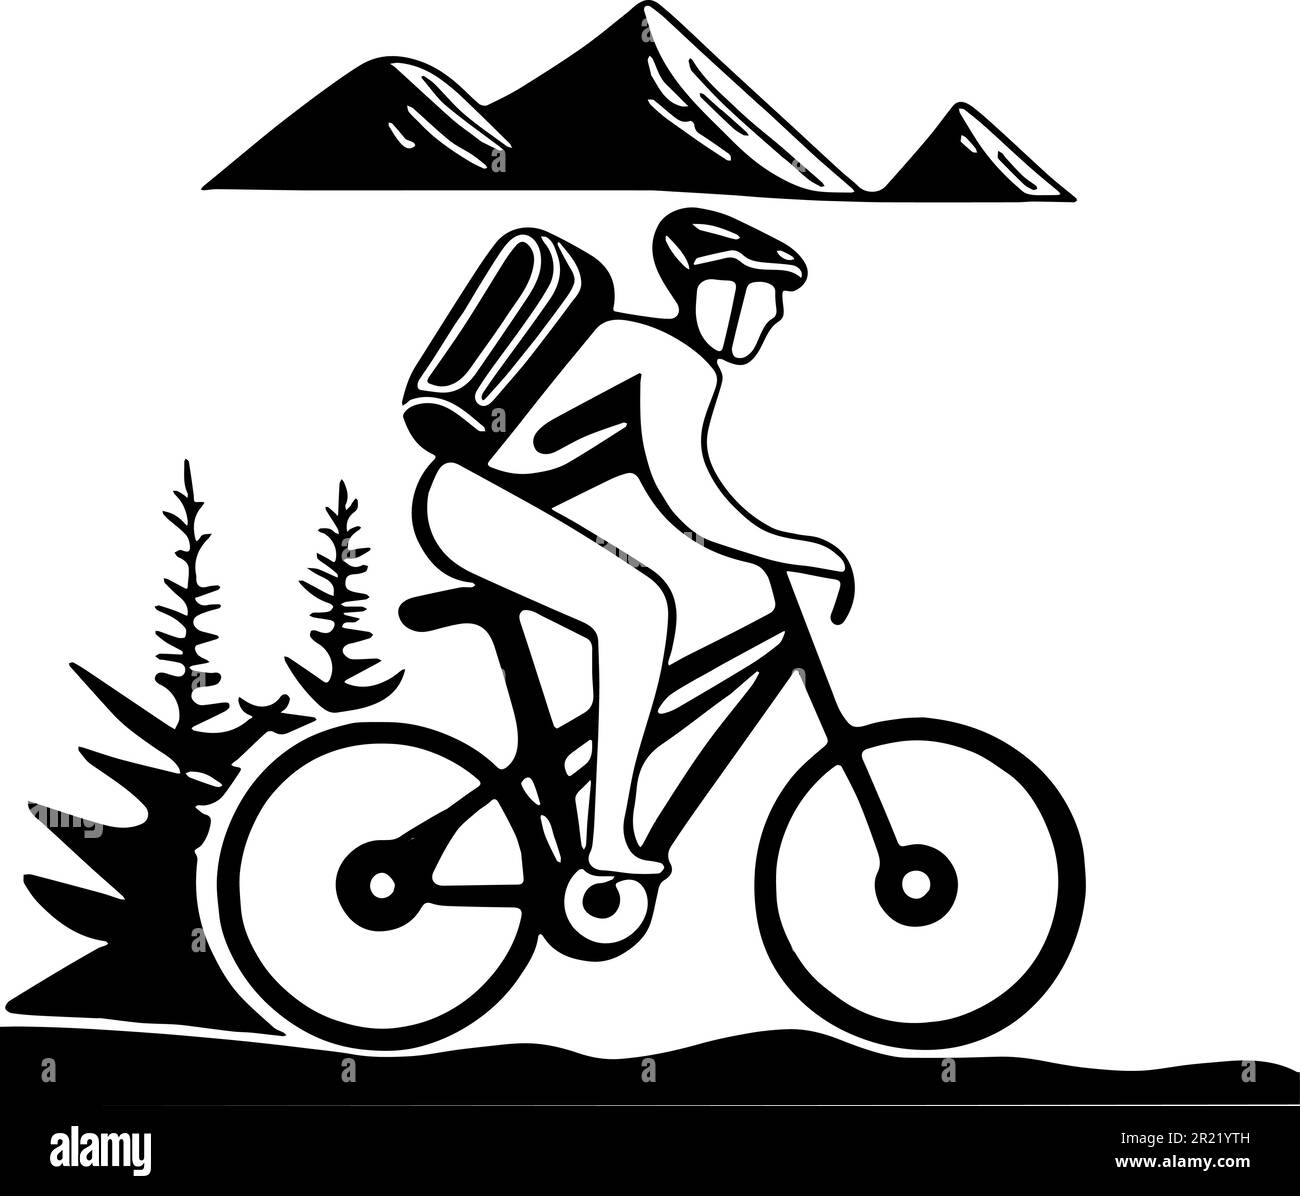 Homme sur VTT est en vélo sur un plateau. Derrière lui se trouvent des sommets de montagne visibles et des arbres de sapin. Il porte un casque de vélo et un sac à dos. Vecteur ico Illustration de Vecteur